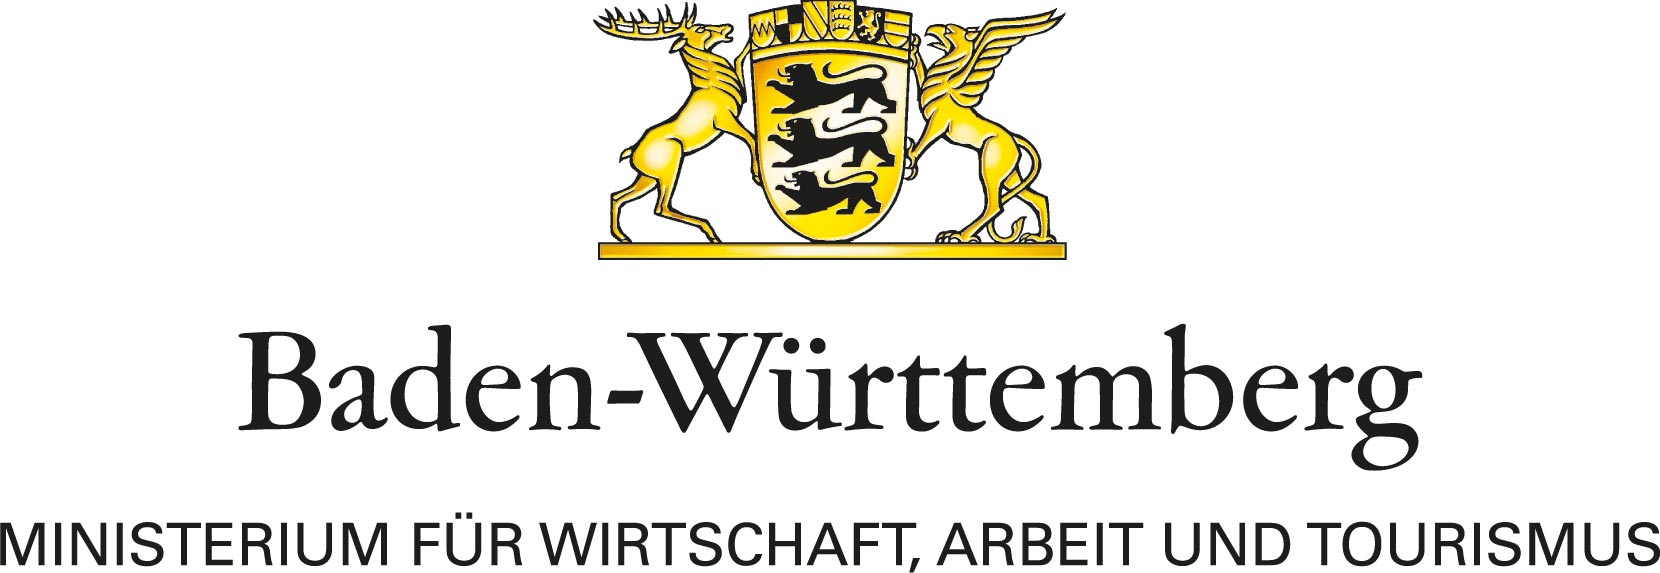 Baden-Württenberg, Ministerium für Wirtschaft, Arbeit und Tourismus